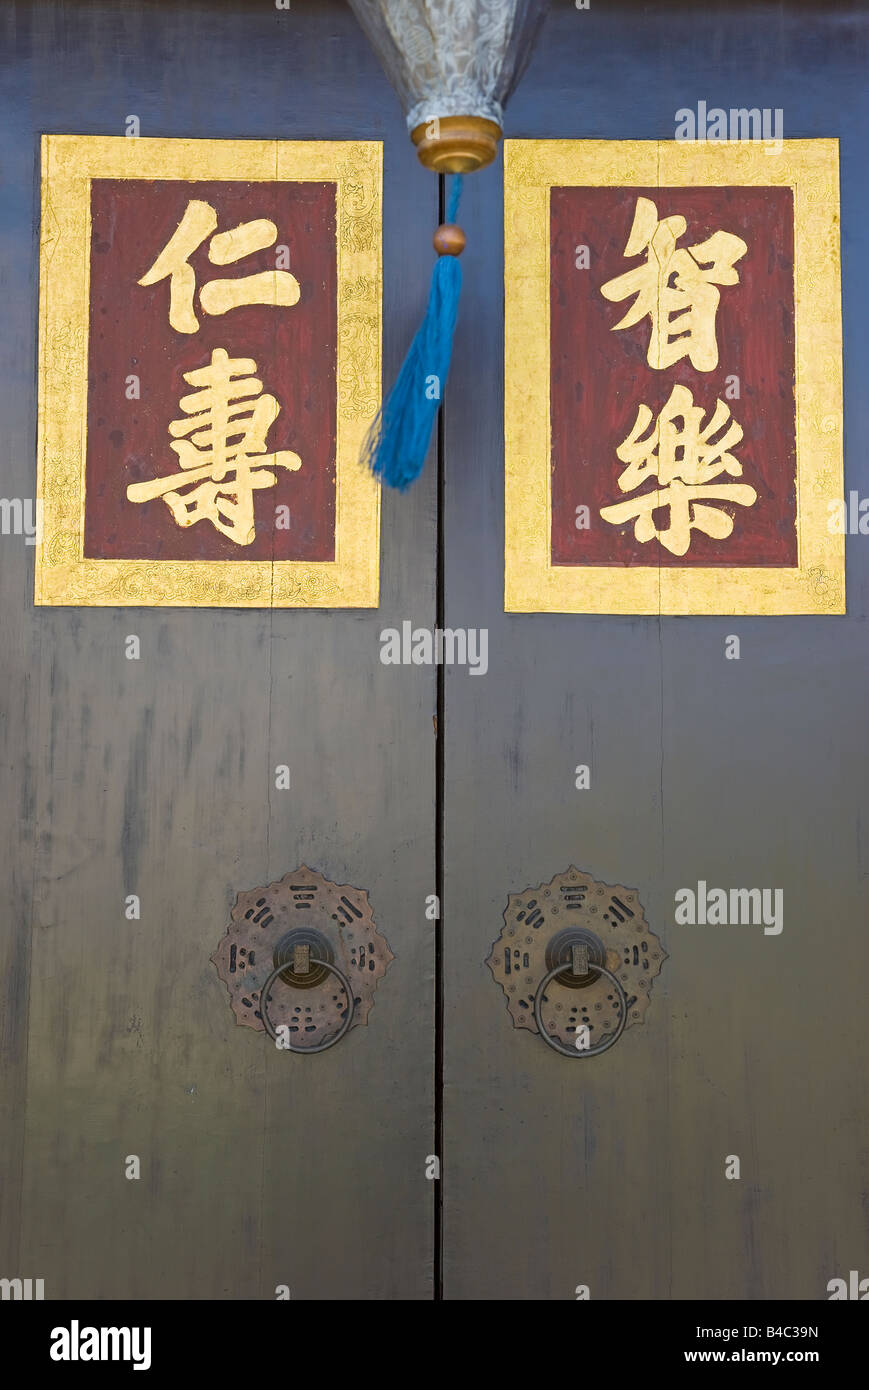 Asie, Malaisie, Penang, Pulau Pinang, Georgetown, Quartier chinois détail d'une lanterne de papier et l'écriture chinoise Banque D'Images